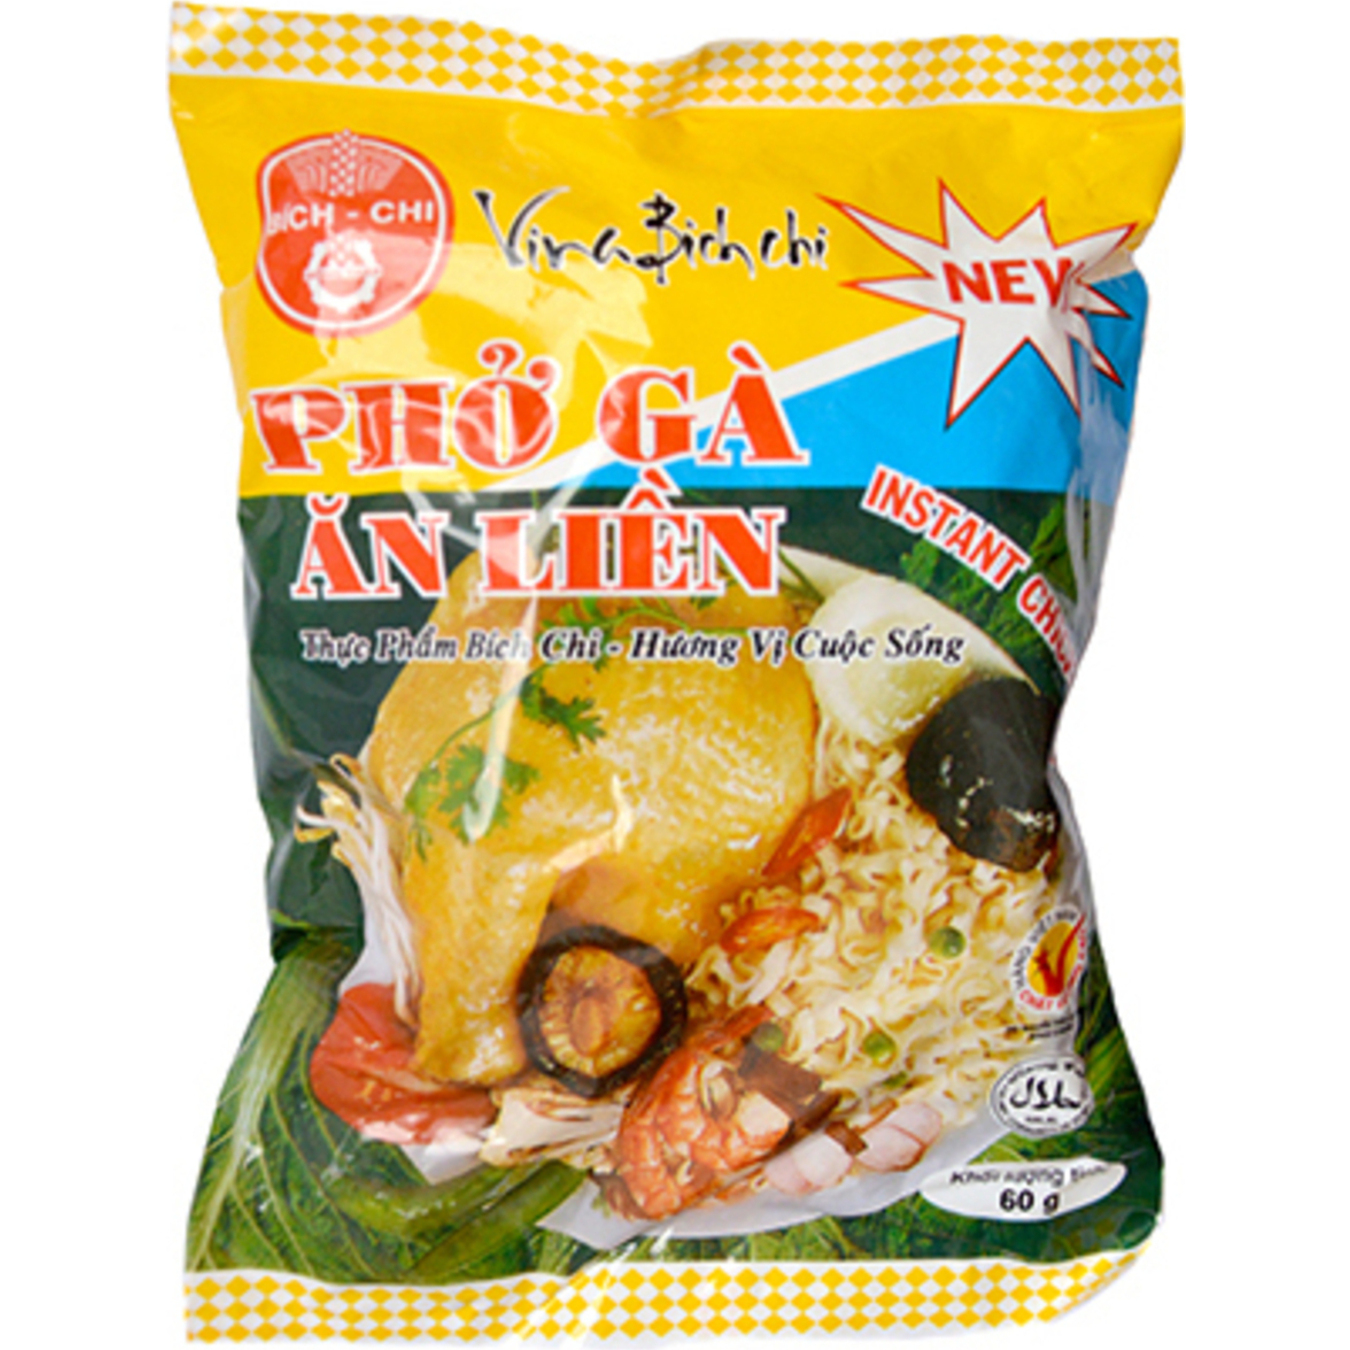 Bich-Chi rice noodles with chicken flavor 60g